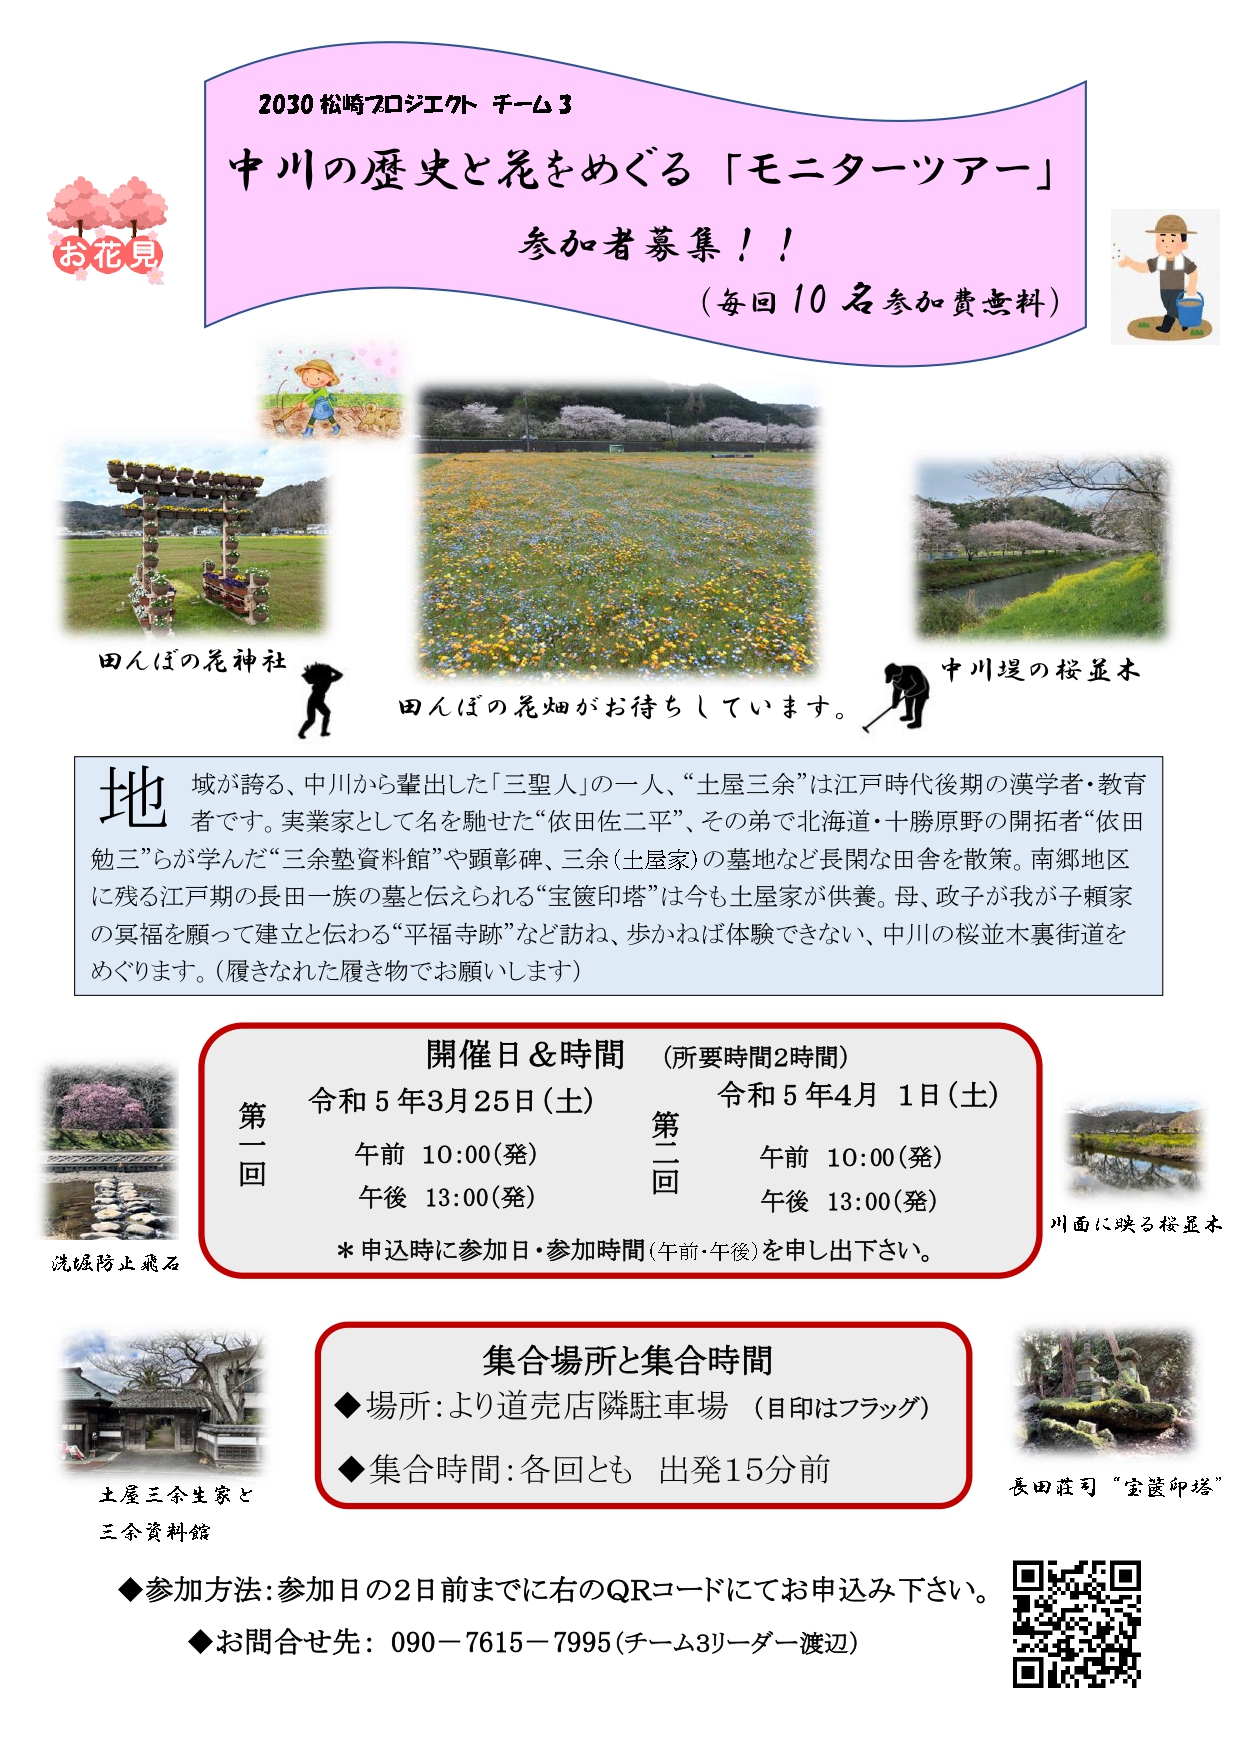 中川の歴史と花をめぐる「モニターツアー」参加者募集